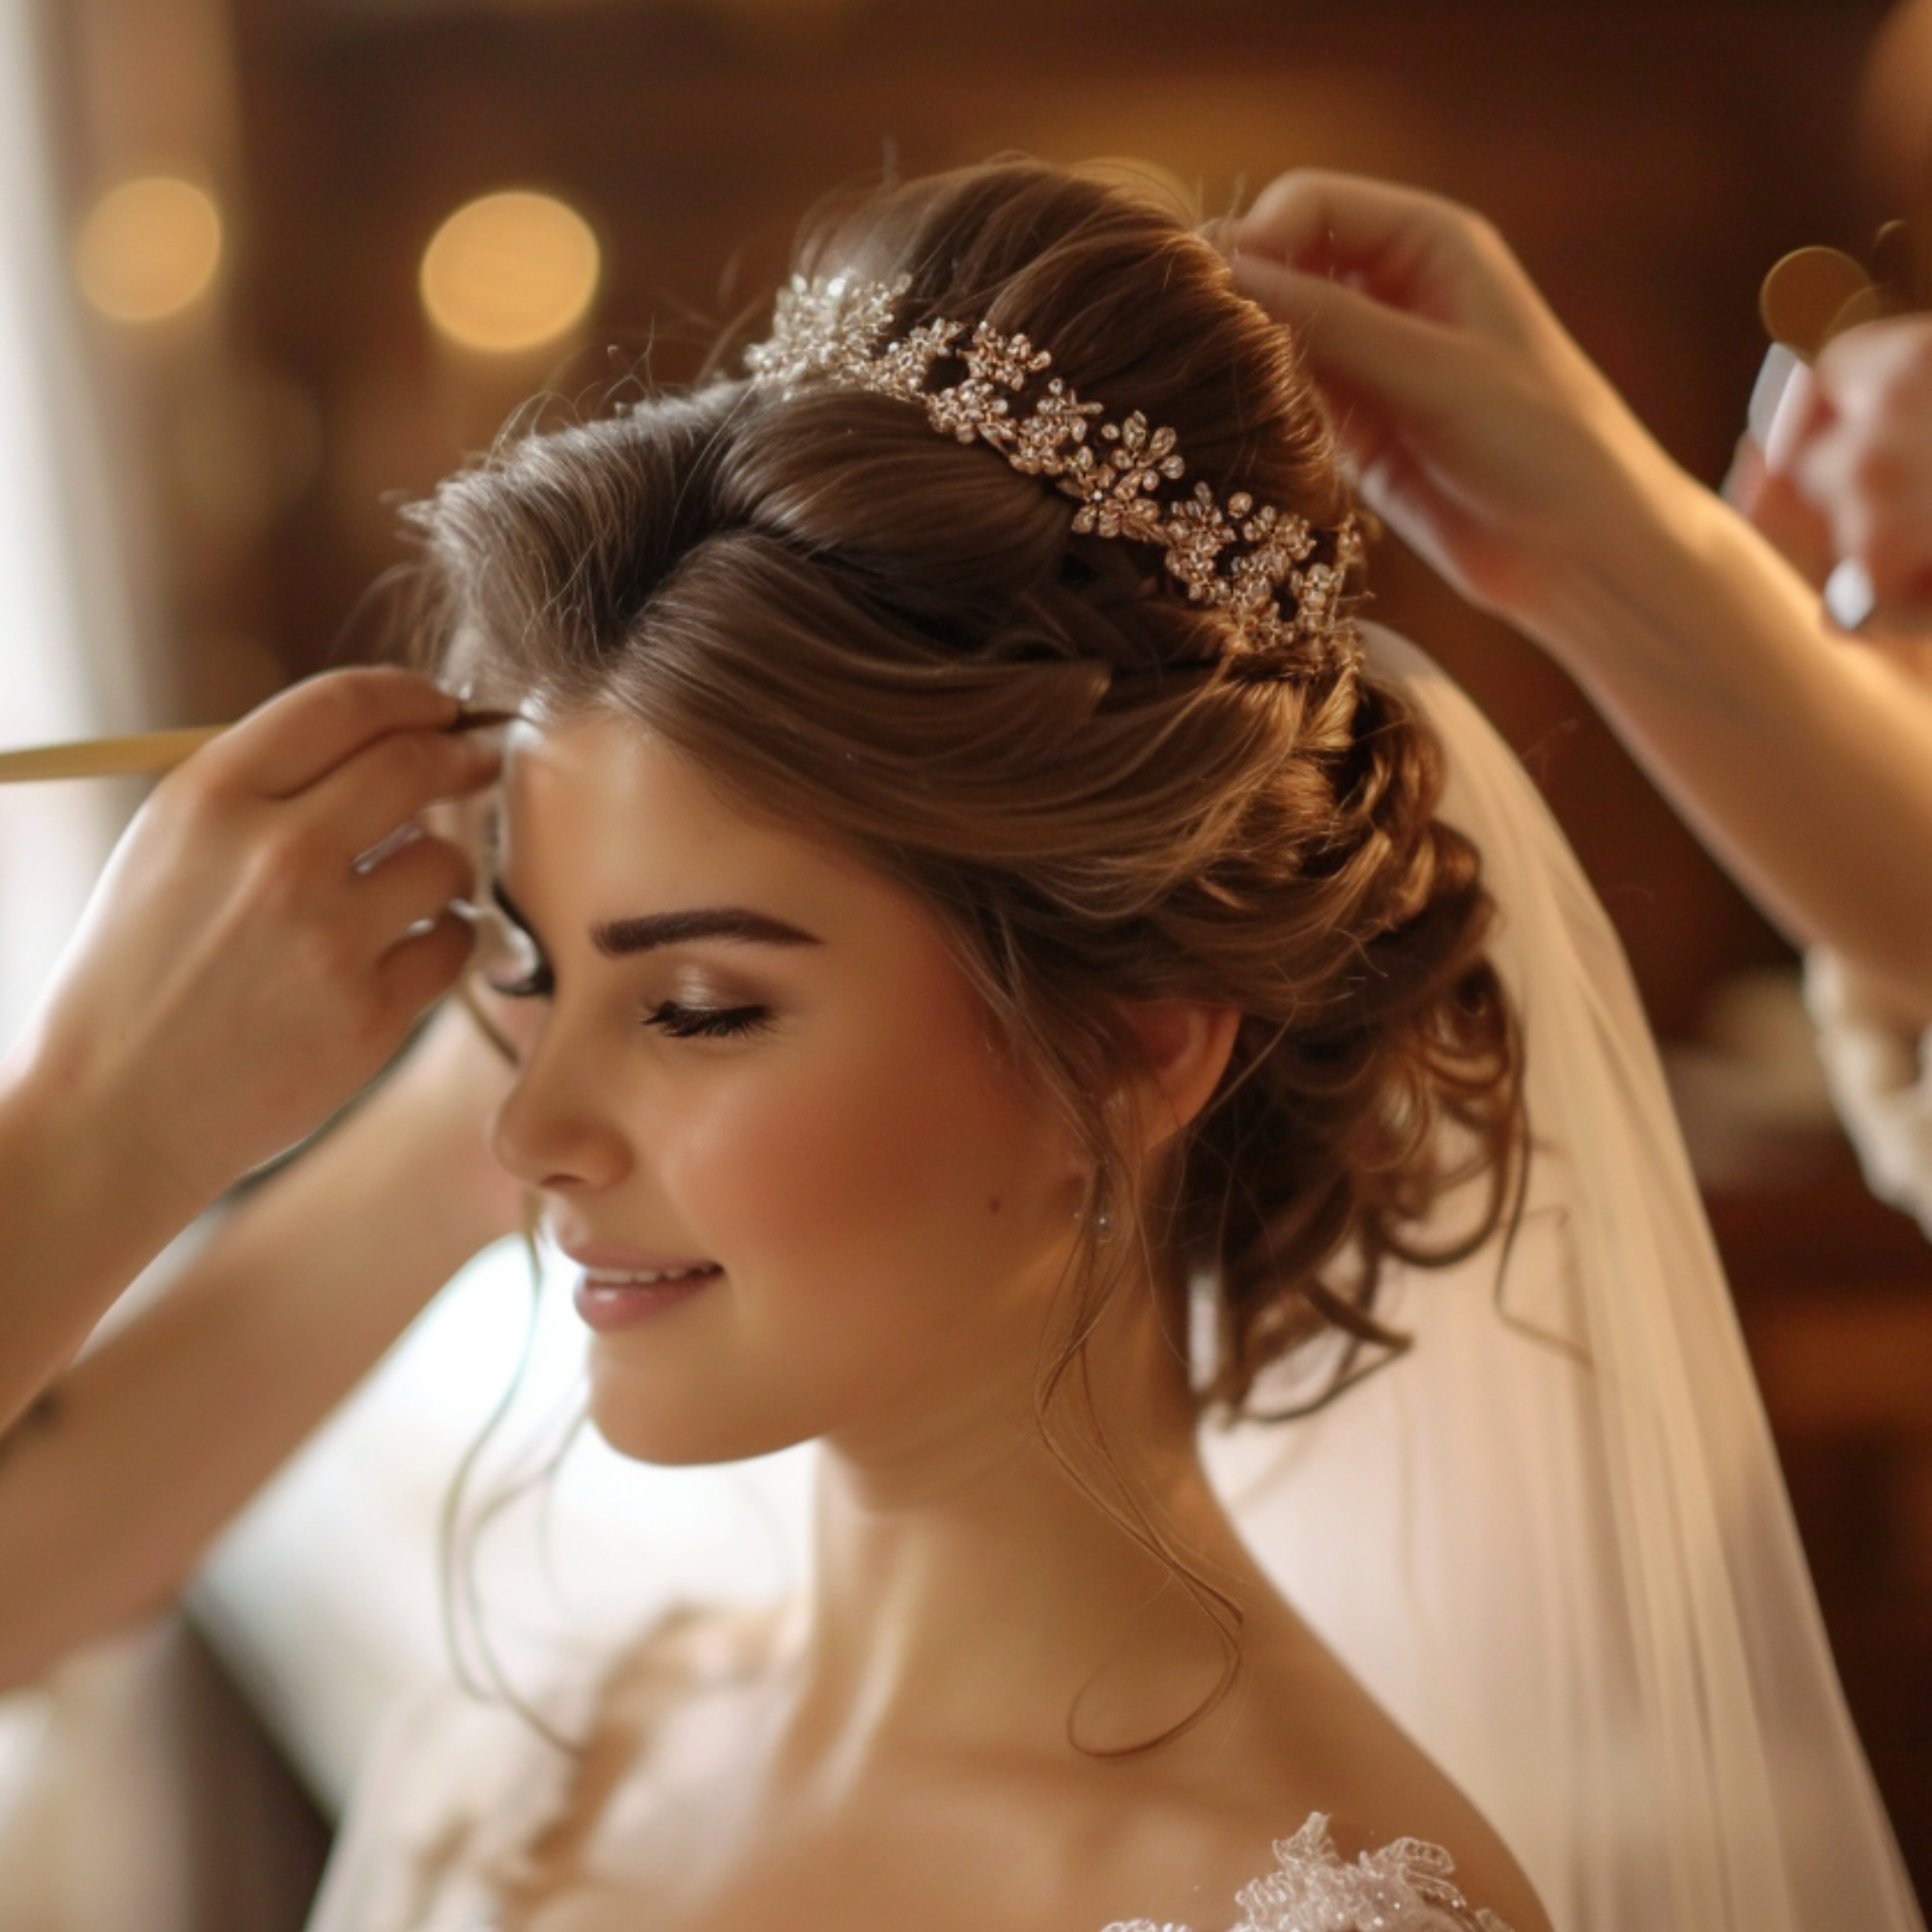 Wedding Season Elegance: Bridal Hair and Grooming Trends